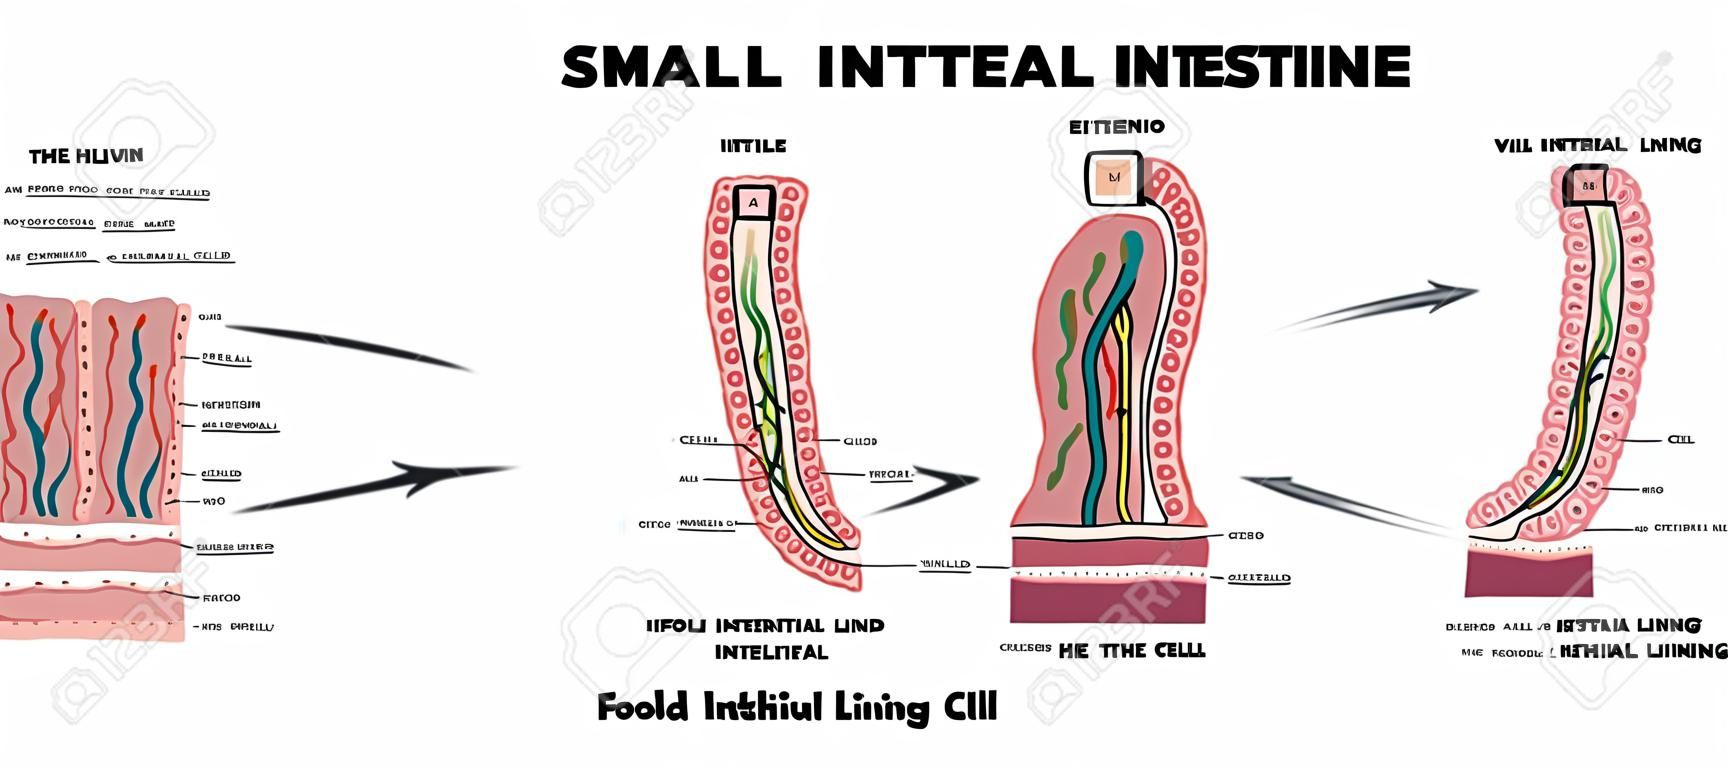 Vékonybél bélés anatómia, a fold a bélfalat, villi és epithelialis sejt mikrobolyhokat részletes illusztrációk.